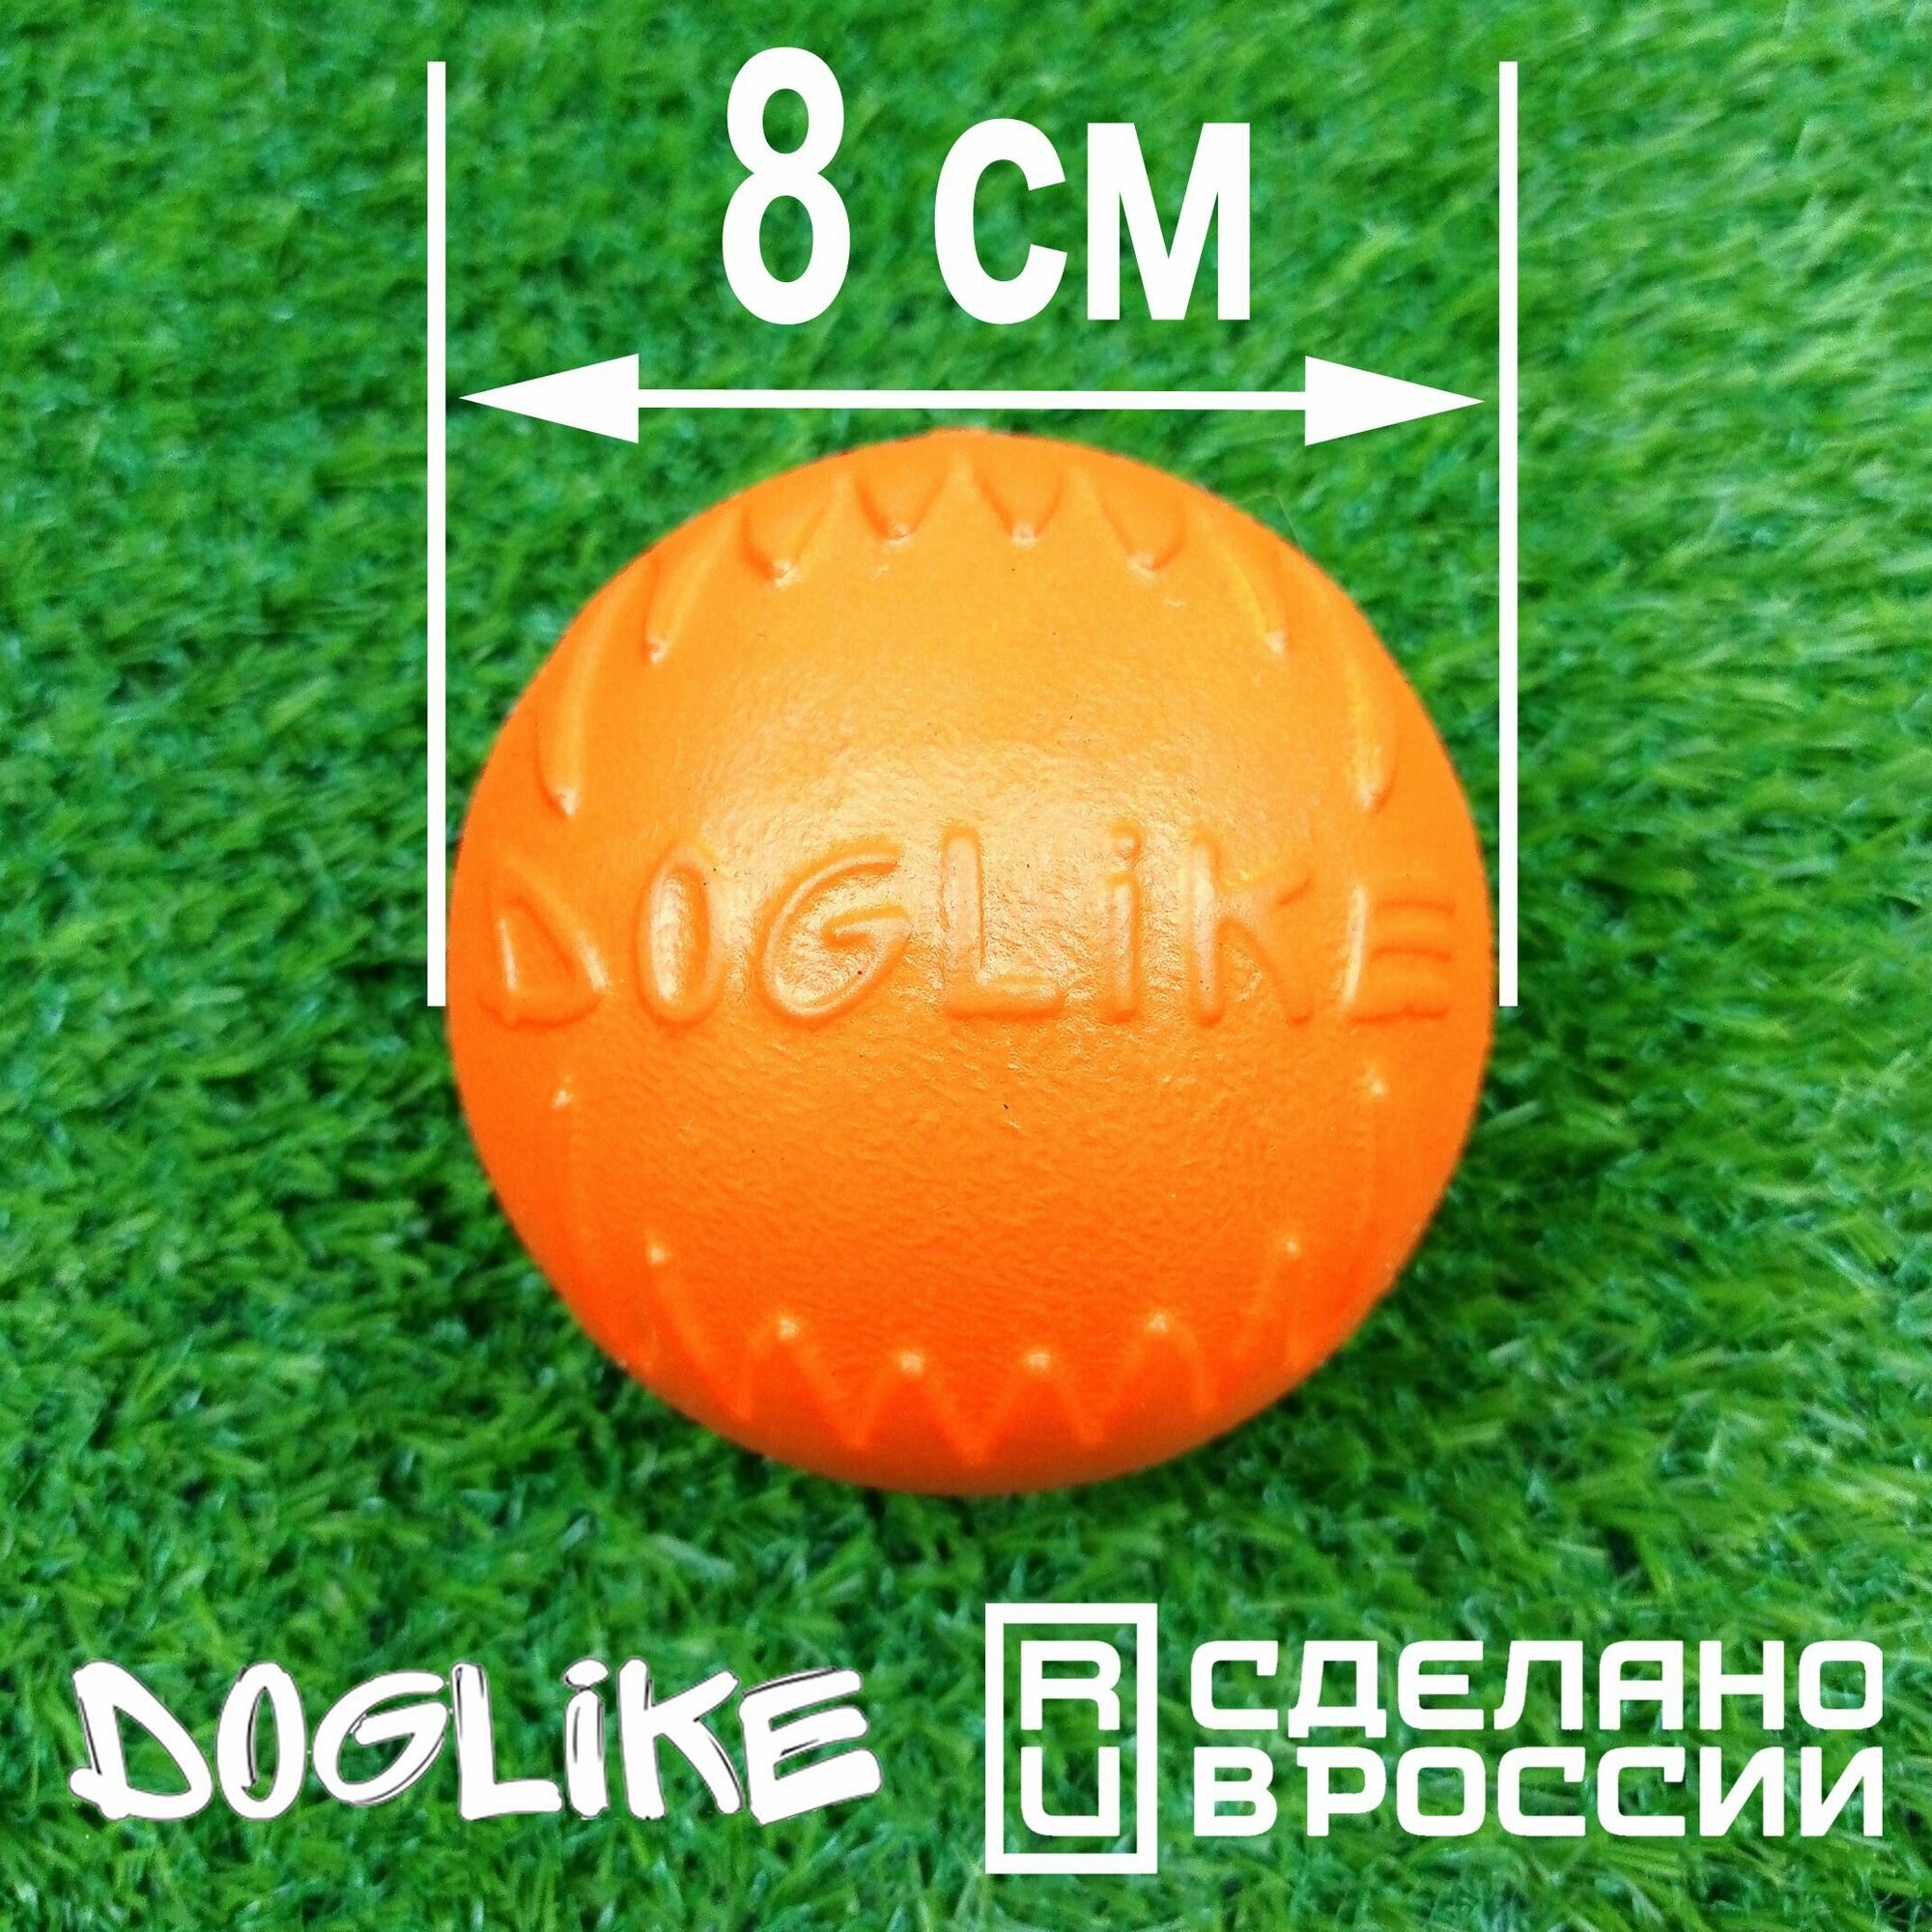 Мячик для собак "ДогЛайк" (Doglike) большой 8 см, для средних и крупных пород, антивандальная игрушка для собак